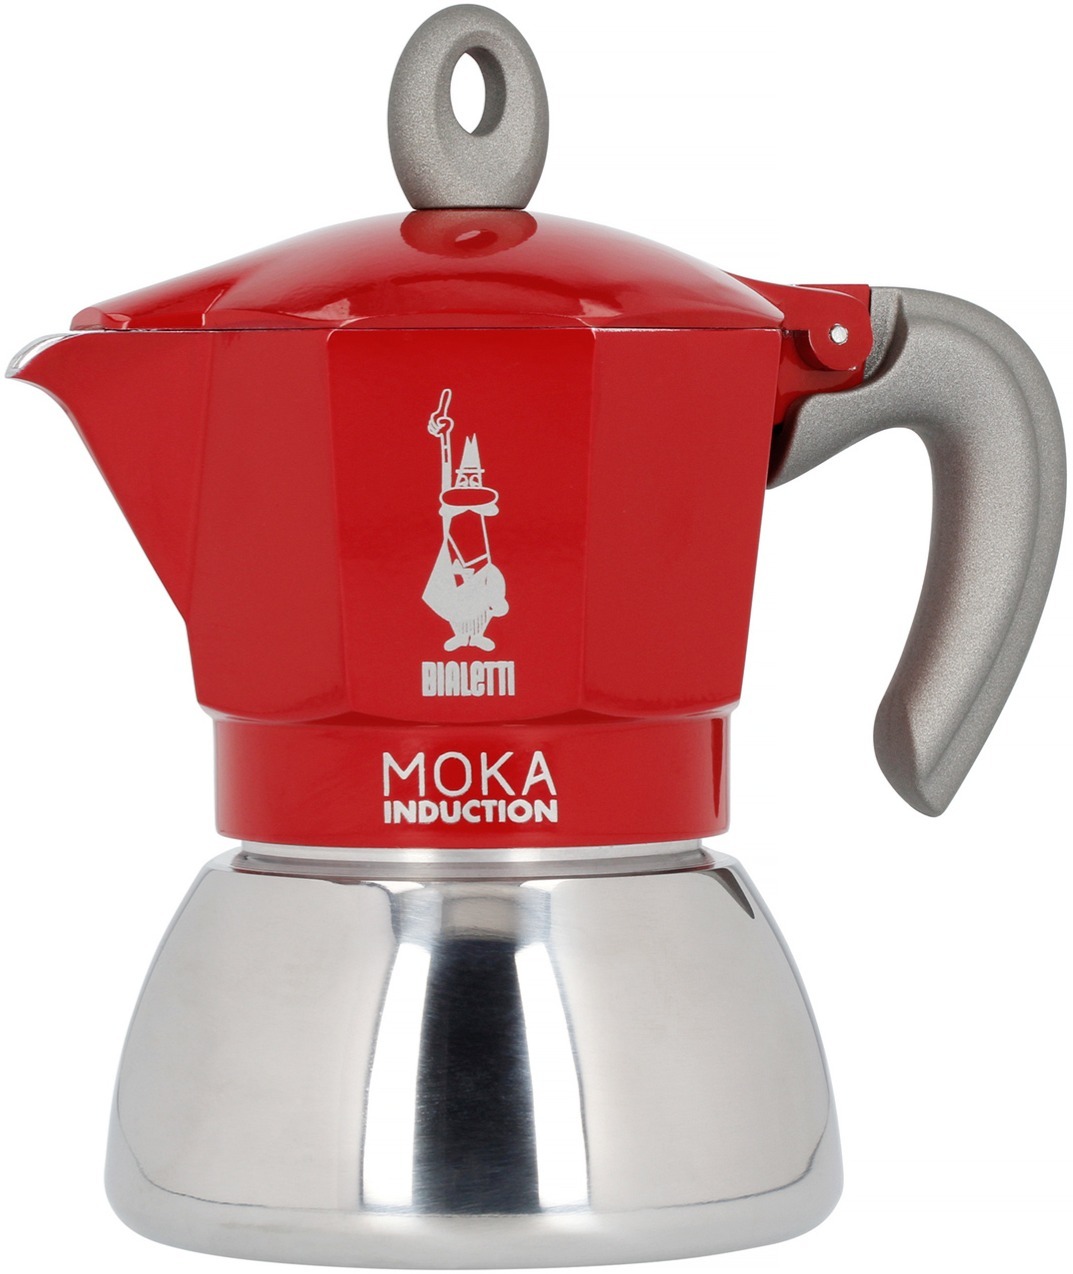 Ấm pha cà phê bếp từ Bialetti Moka Induction - 4 cups